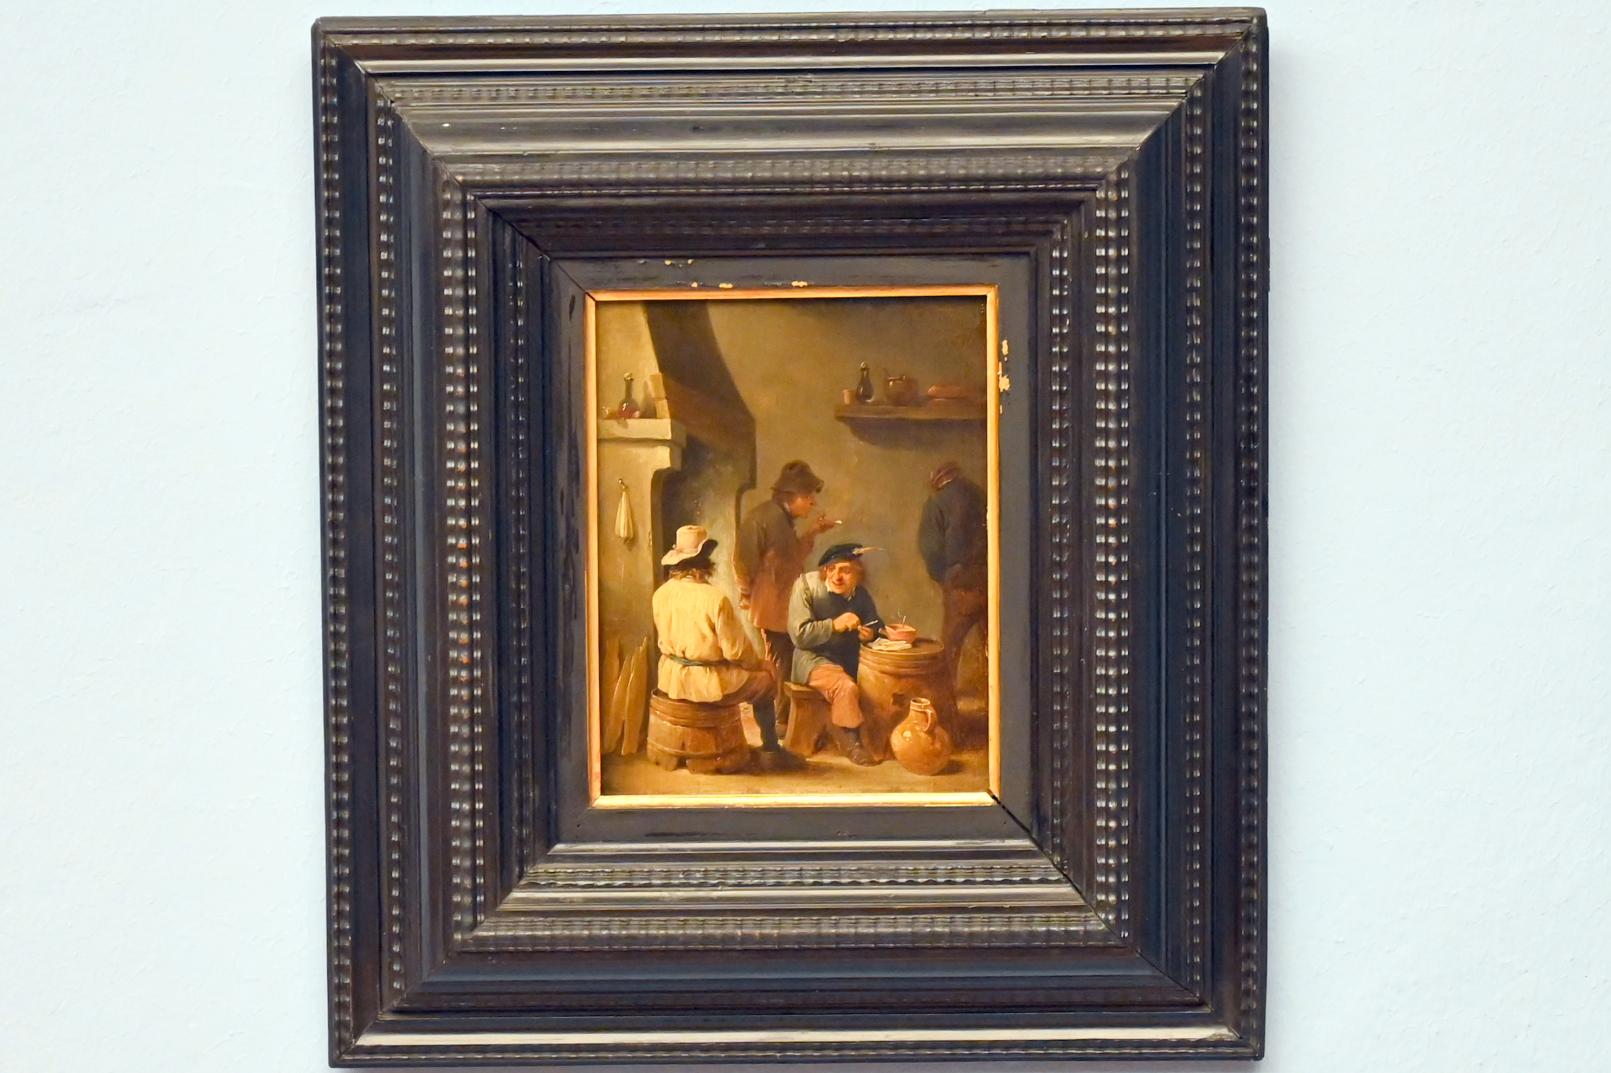 David Teniers der Jüngere (1633–1682), Die Raucher, Lübeck, St. Annen-Museum, Obergeschoß, Saal 13, um 1635